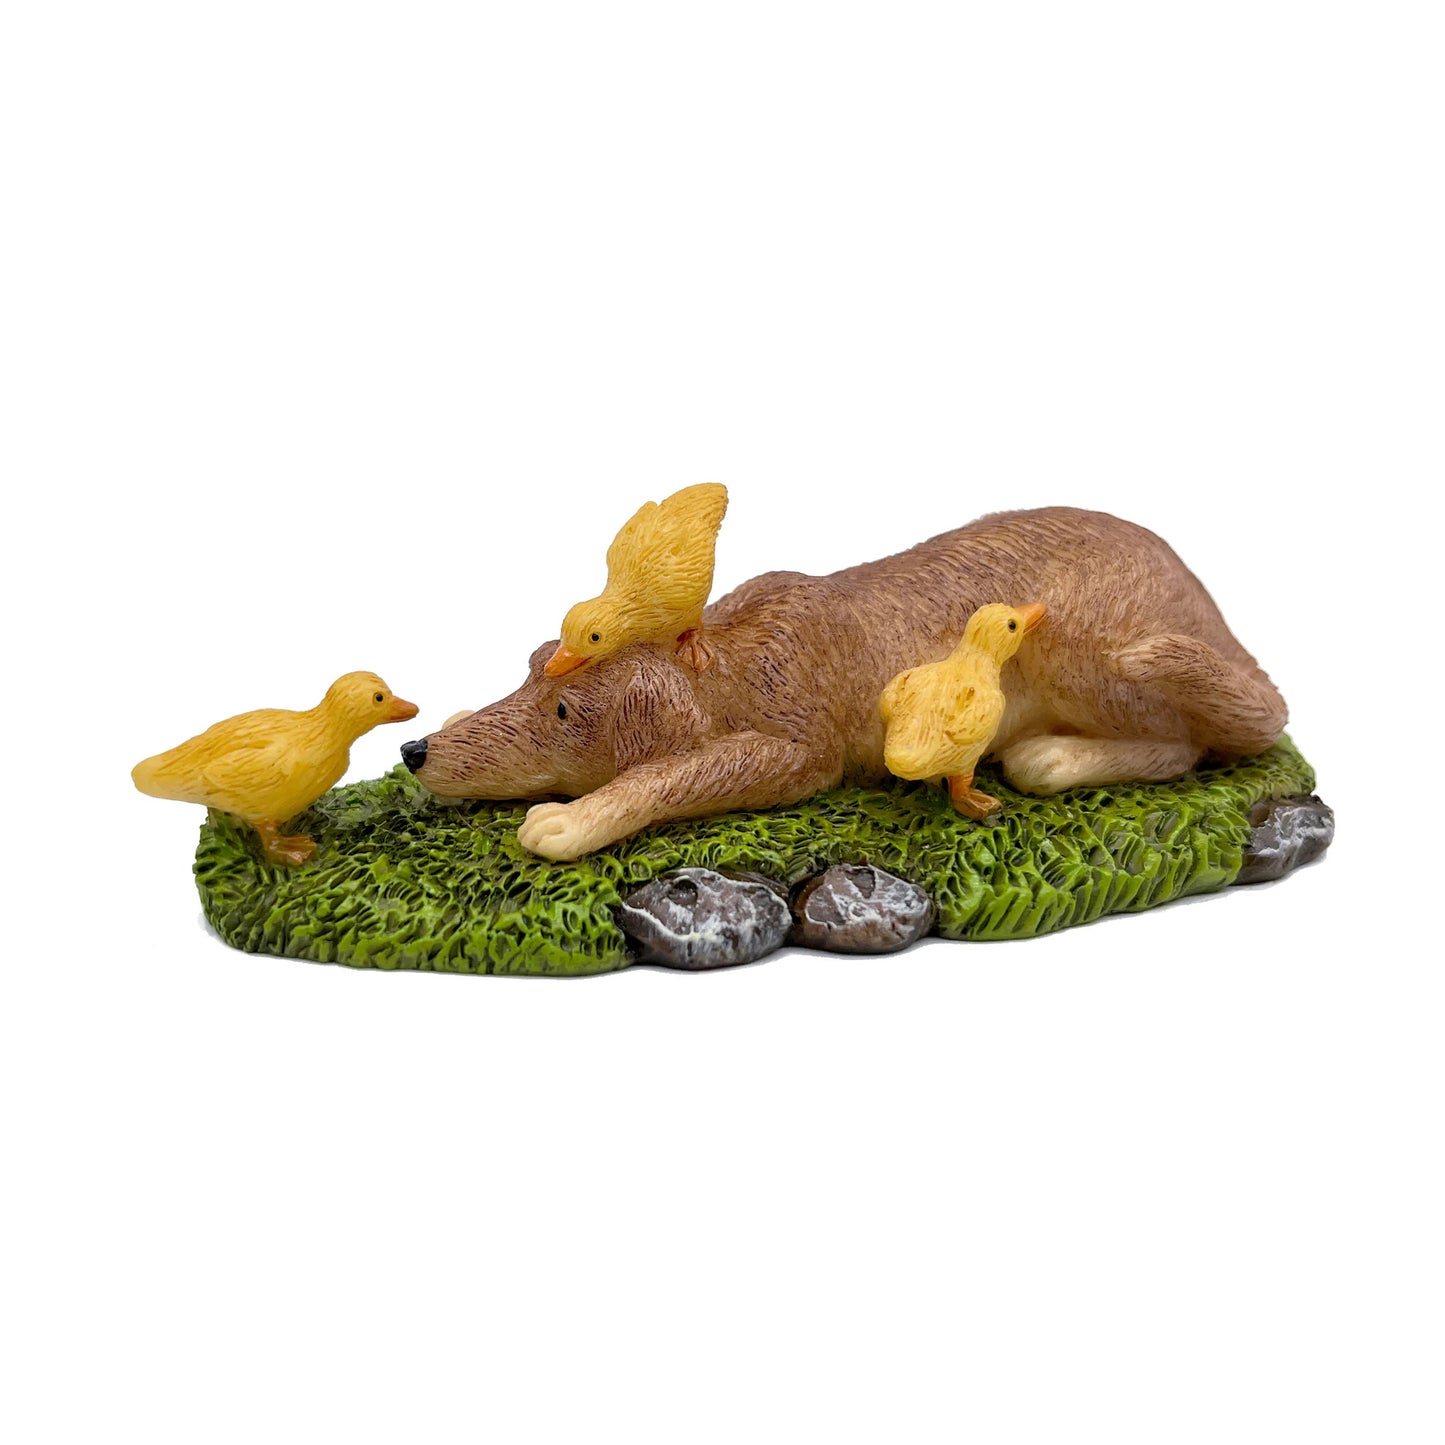 Small Friends Dog & Ducklings Fairy Garden Miniature